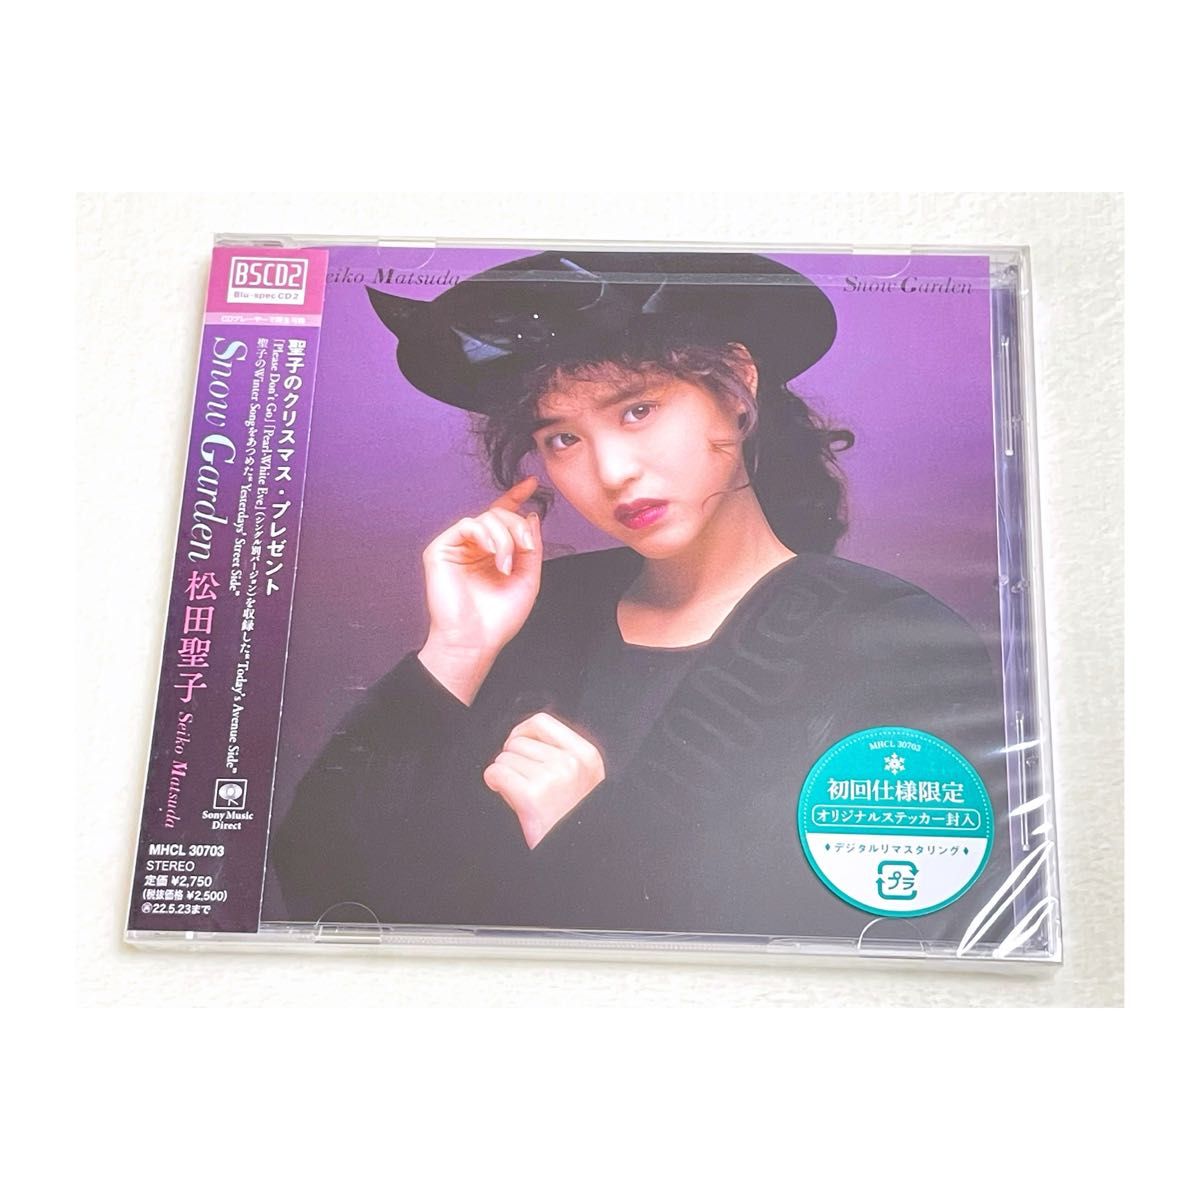 新品未開封 Snow Garden 松田聖子 Blu-spec CD2 オリジナルステッカー付き